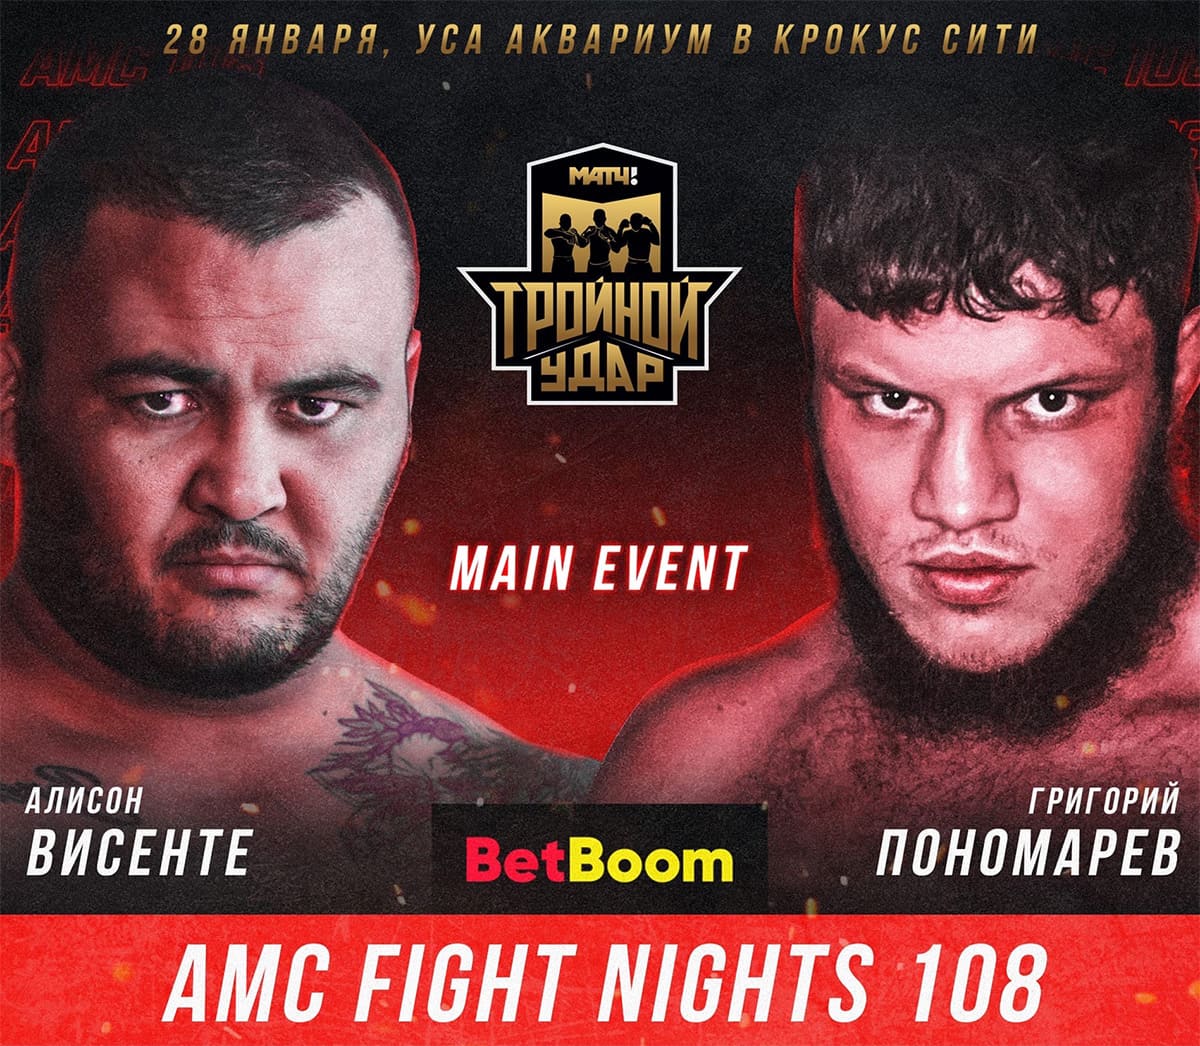 AMC Fight Nights 108: Пономарев - Висенте дата проведения, кард, участники и результаты